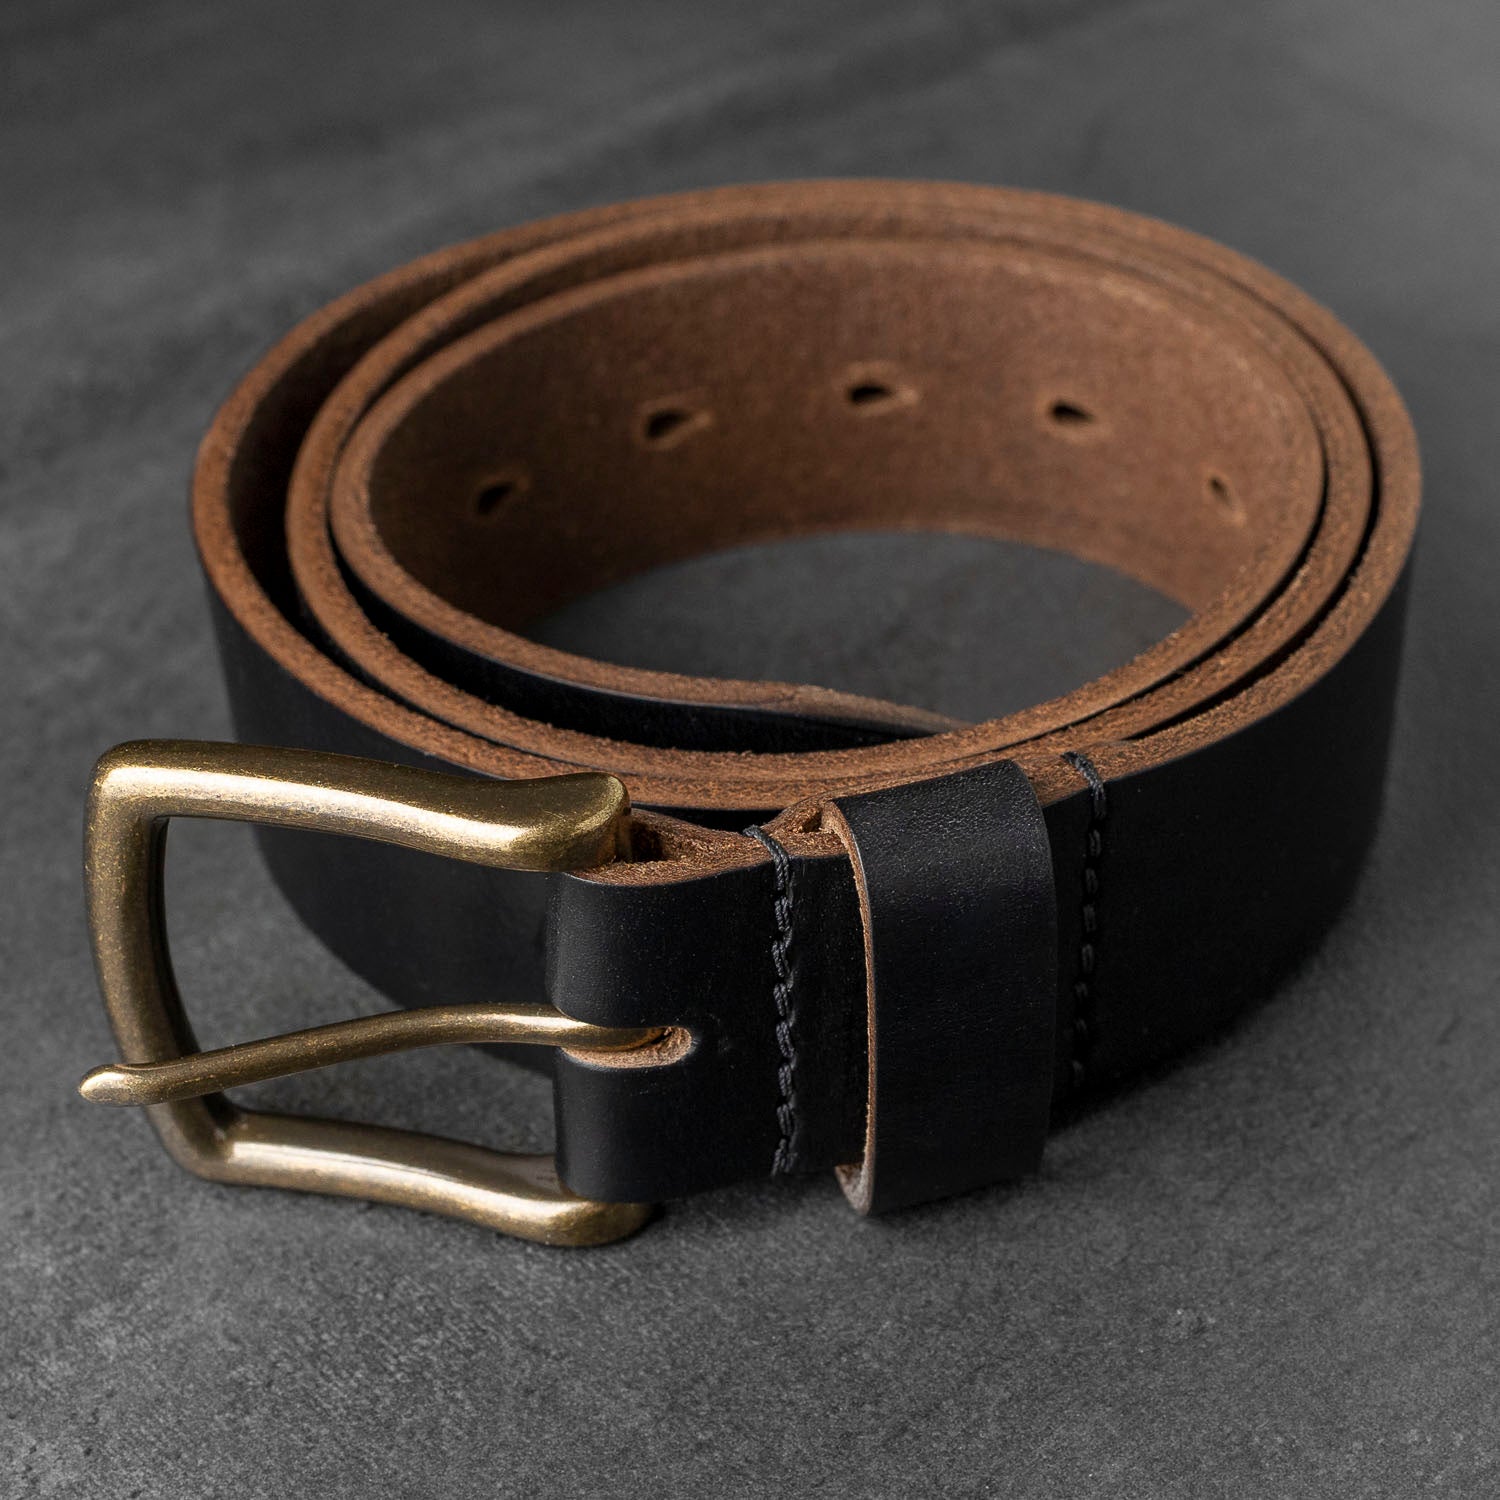 Ashland Leather Co. | Horween Leather Belt for Men - Brown Chromexcel Color #8 CXL - 32